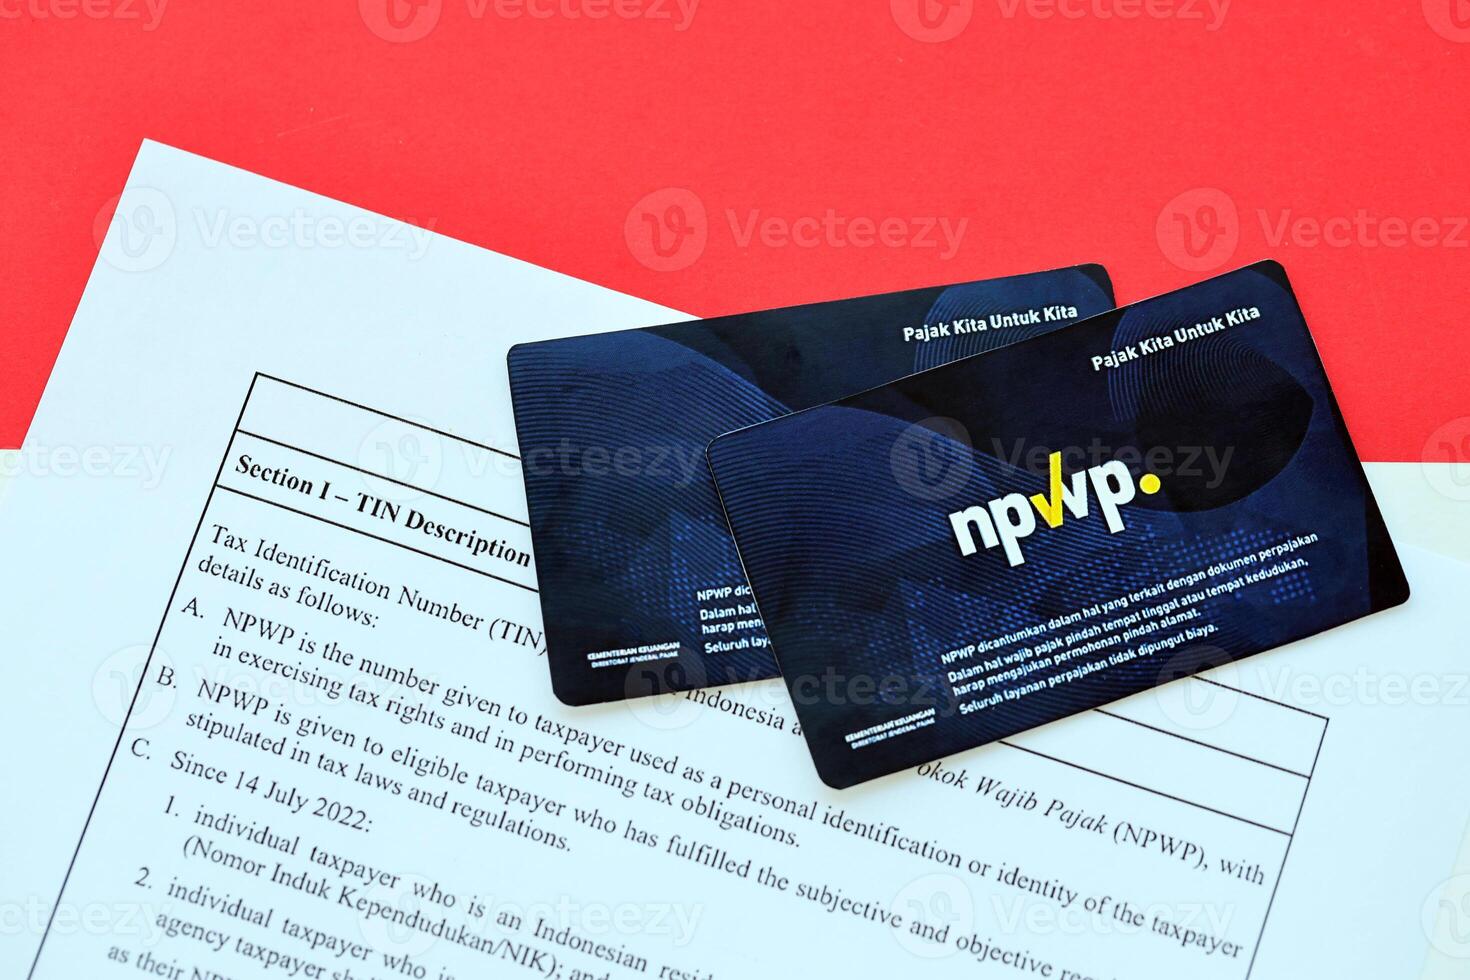 Indonesia npwp nuovo imposta id numero carta originariamente chiamato nomor pokk wajib pajak foto